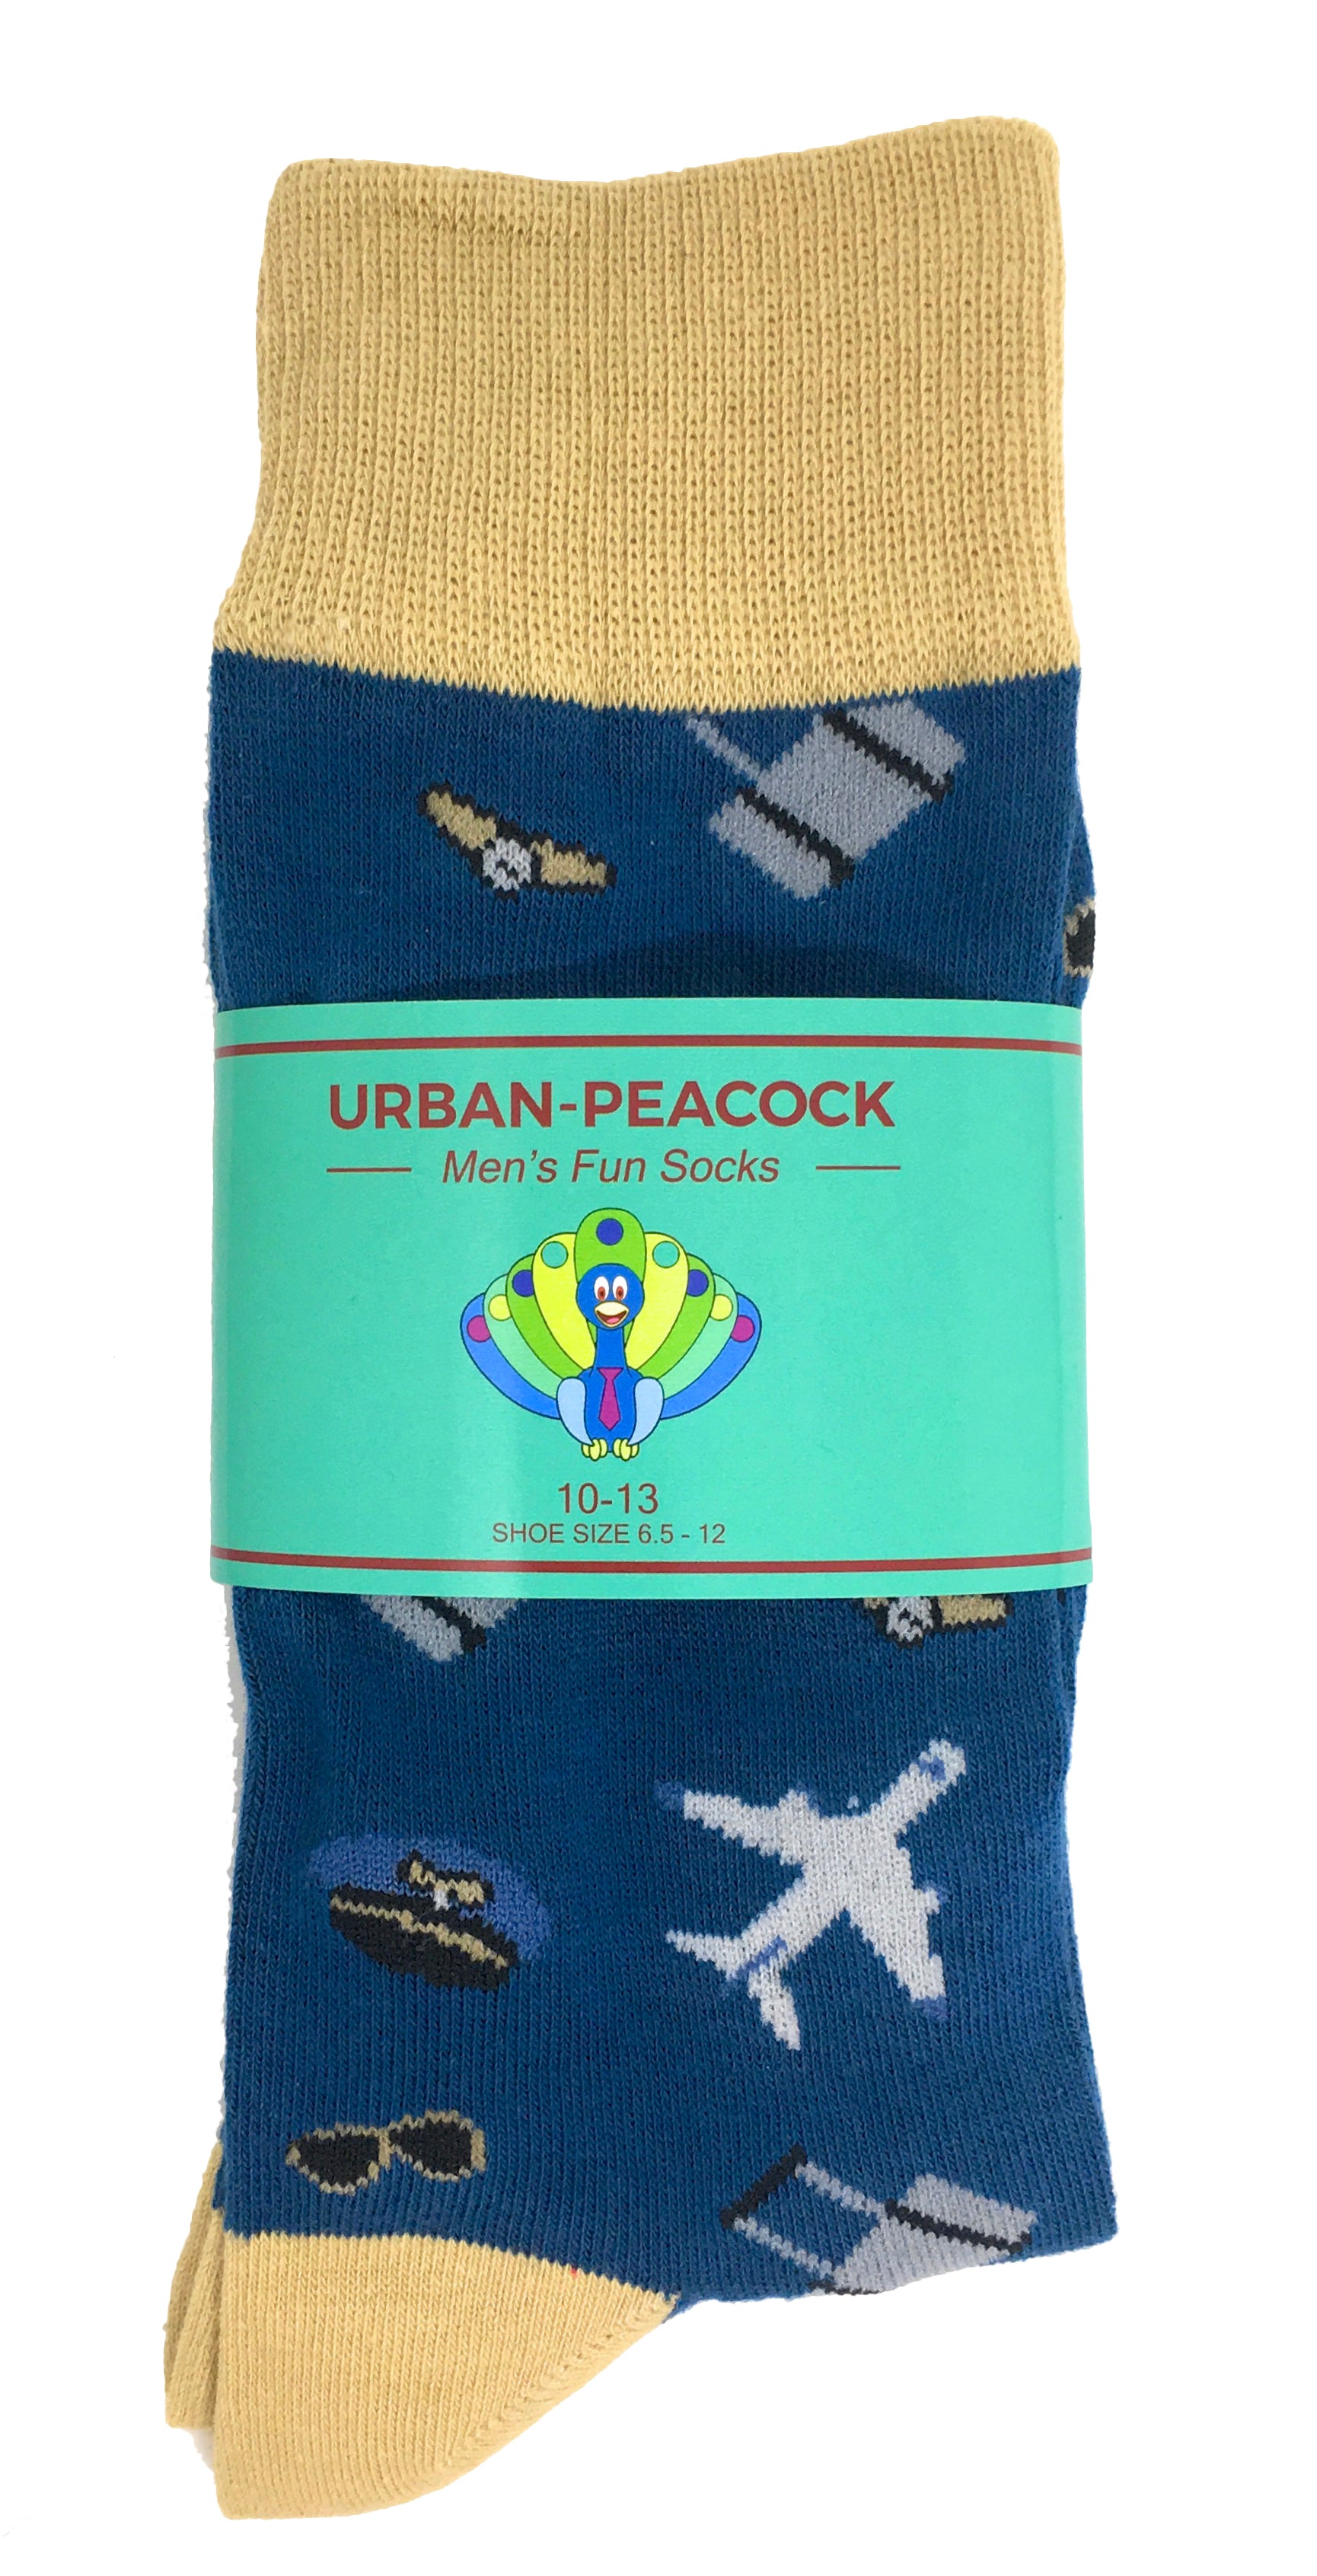 Urban-Peacock Men's Novelty Crew Socks - Airline Pilot